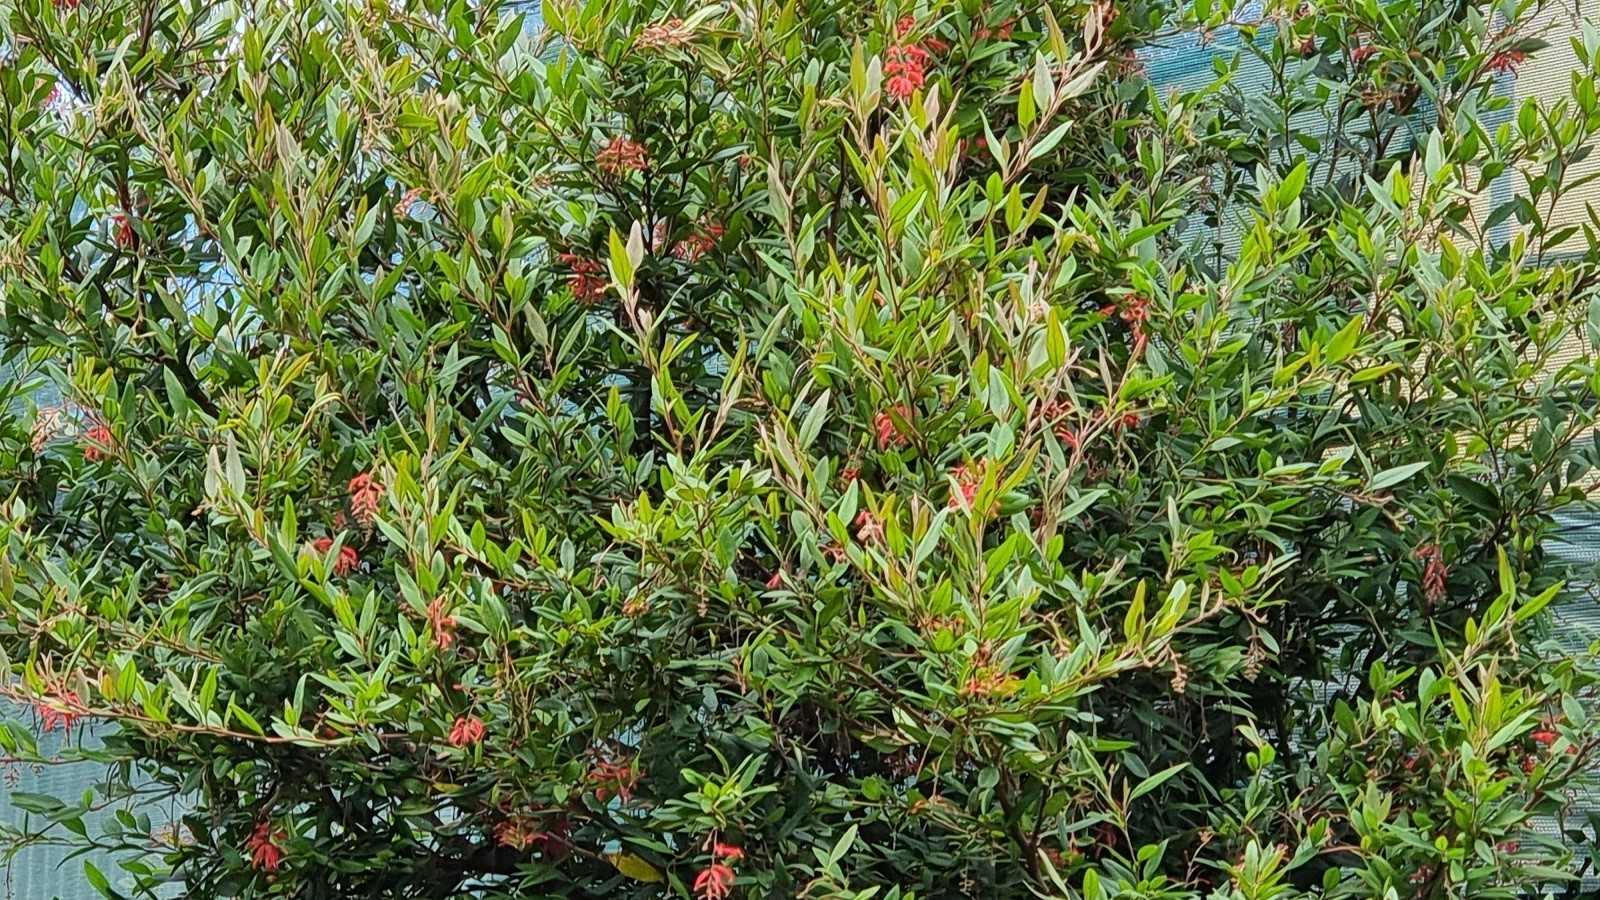 Flora: Grevillea shrub